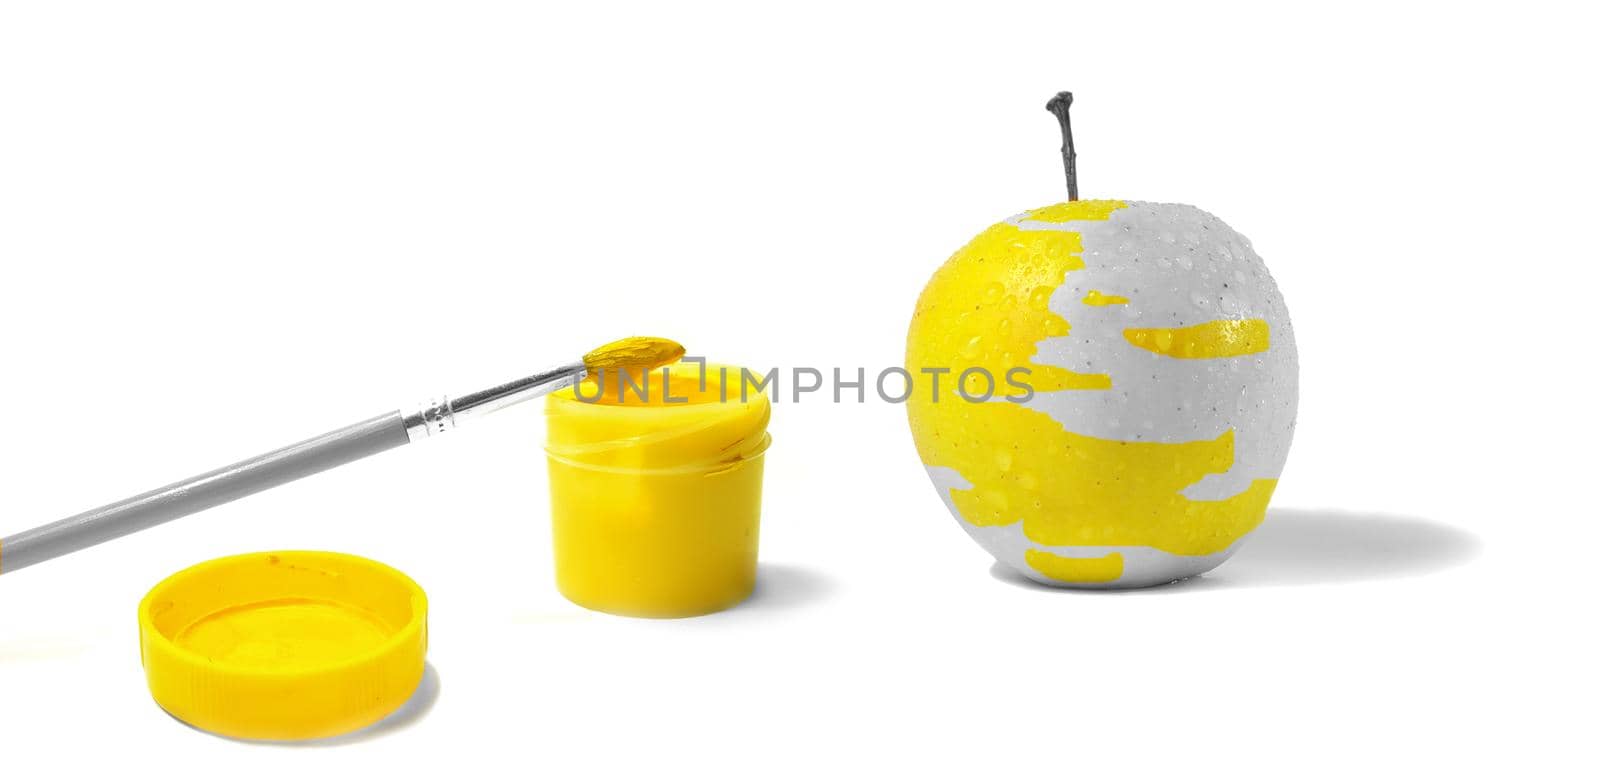 Yellow apple, gouache and brush by tan4ikk1